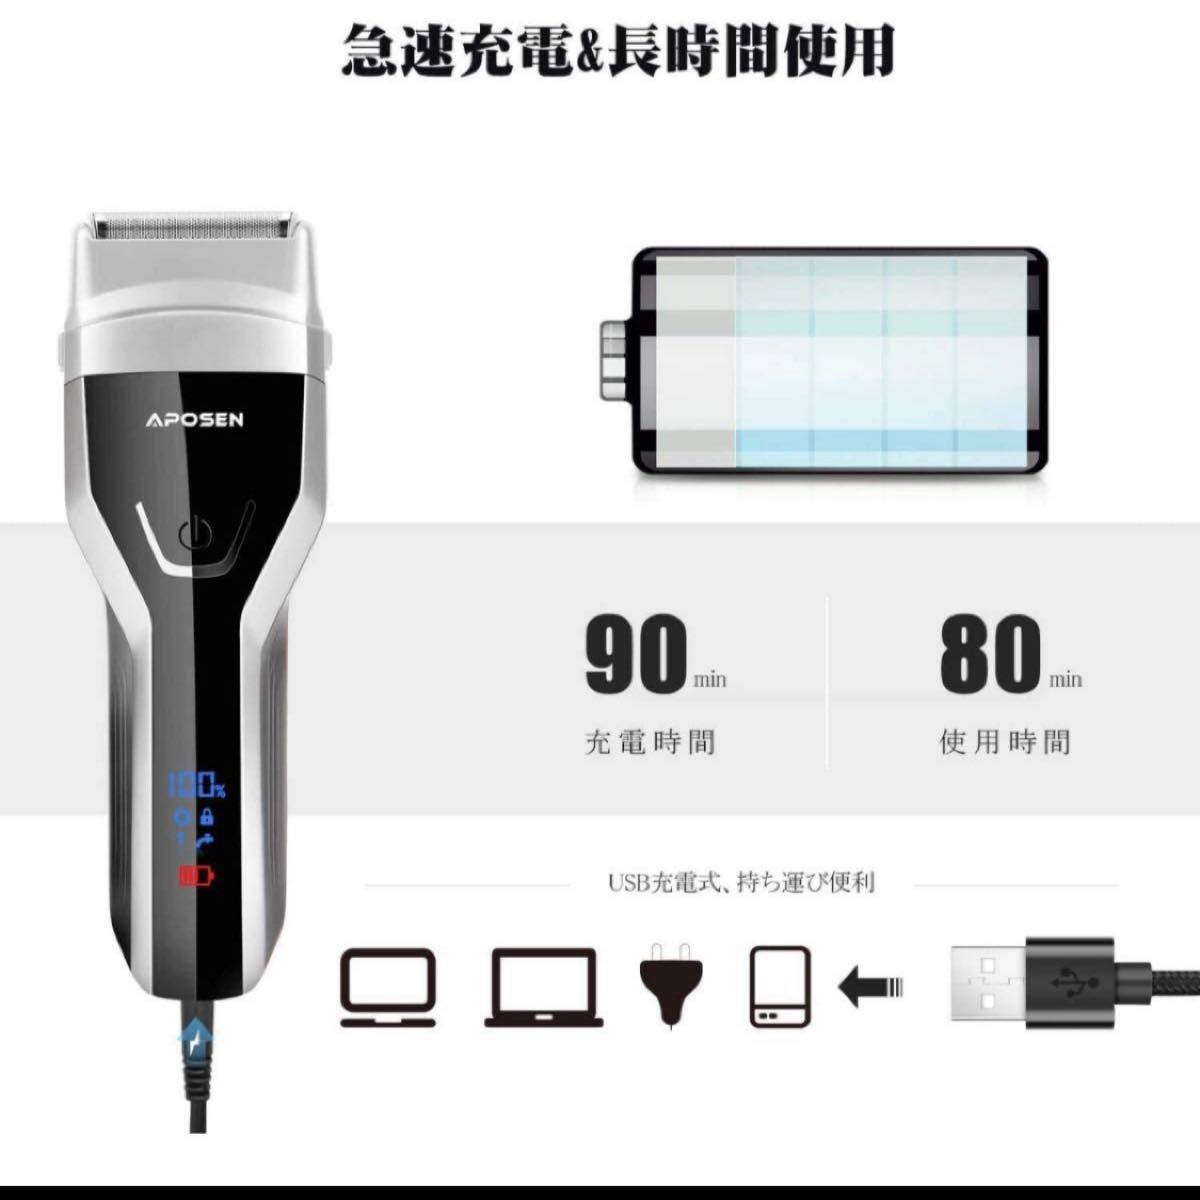 アポセン 電気シェーバー メンズシェーバー 多機能ひげそり 往復式 カミソリ LEDディスプレー USB充電式 水洗い可 